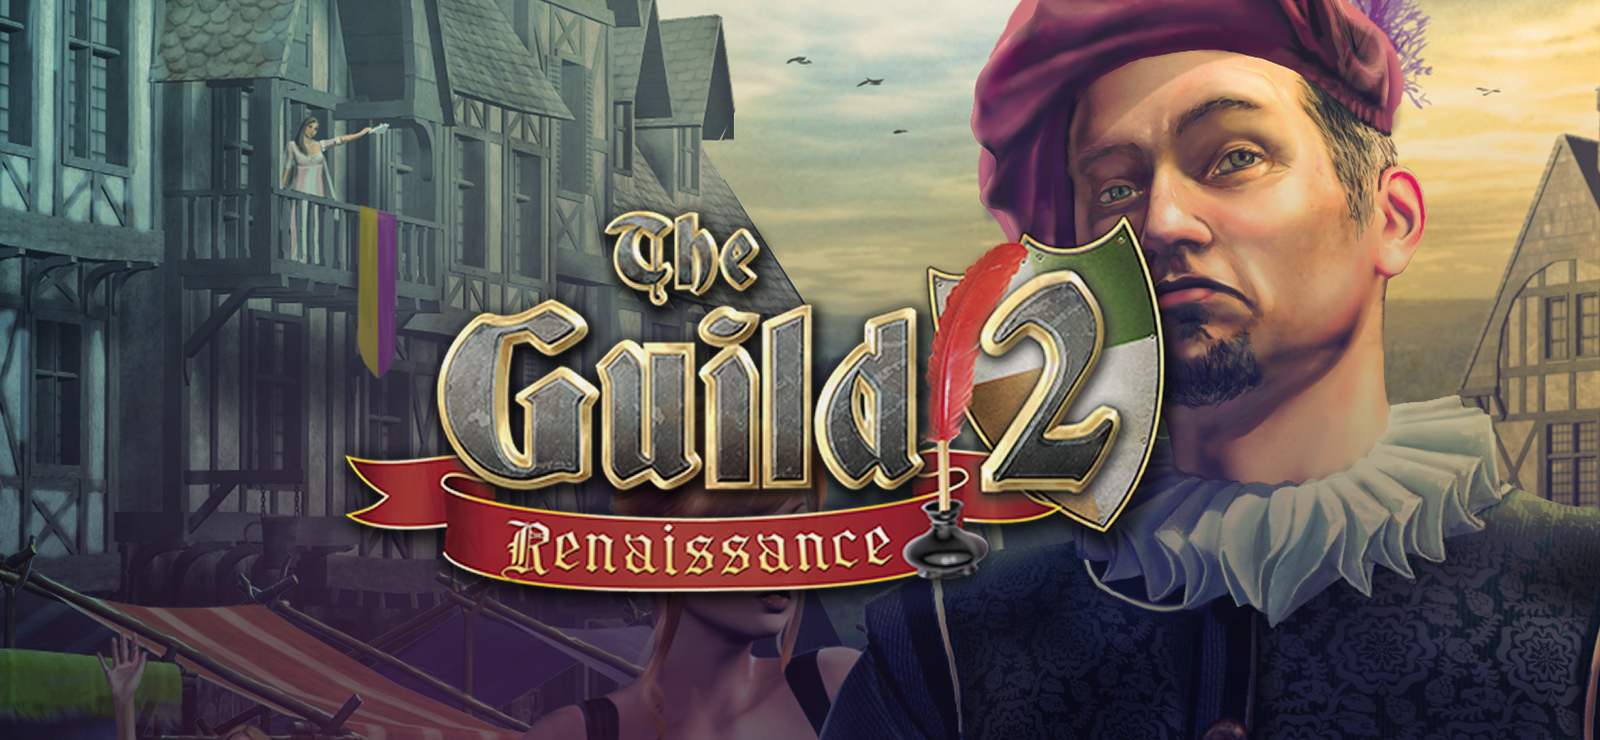 the guild 2 renaissance move building